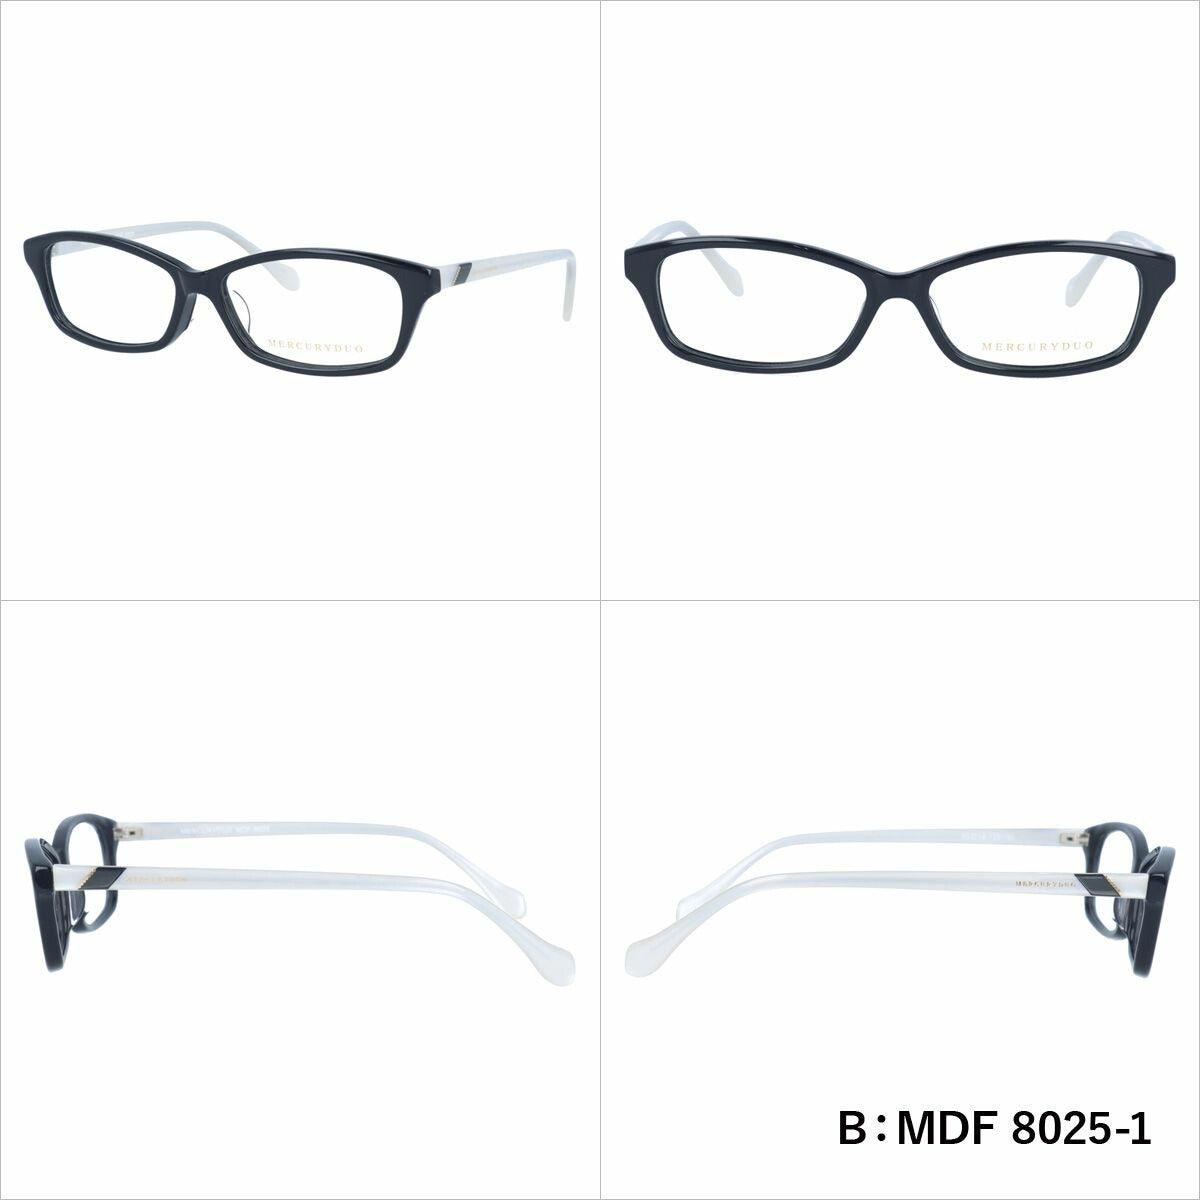 マーキュリーデュオ リーディンググラス フレーム レディース ブランド 度付き 度入り メガネ 眼鏡 アジアンフィット MERCURYDUO MDF 8015-1 / MDF 8025-1 / MDF 8026-1 / MDF 8022-1 レディース 女性 プレゼント